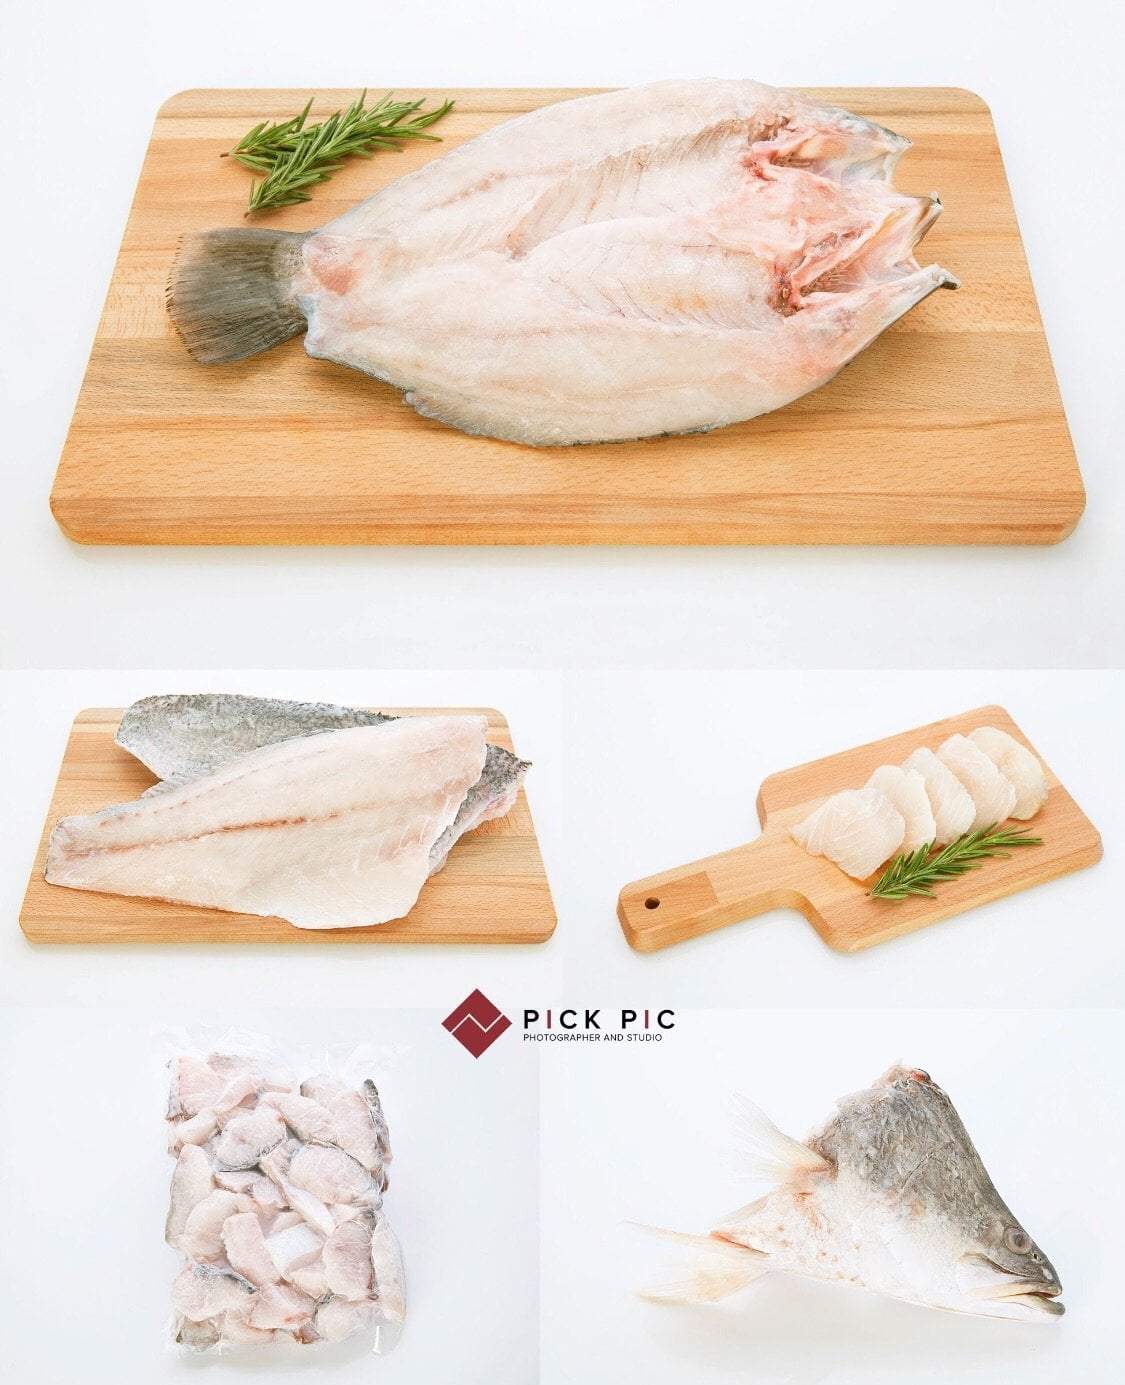 ถ่ายภาพอาหาร (Food & Menu) ภาพเมนูปลาบนเขียง เตรียมปรุงอาหาร